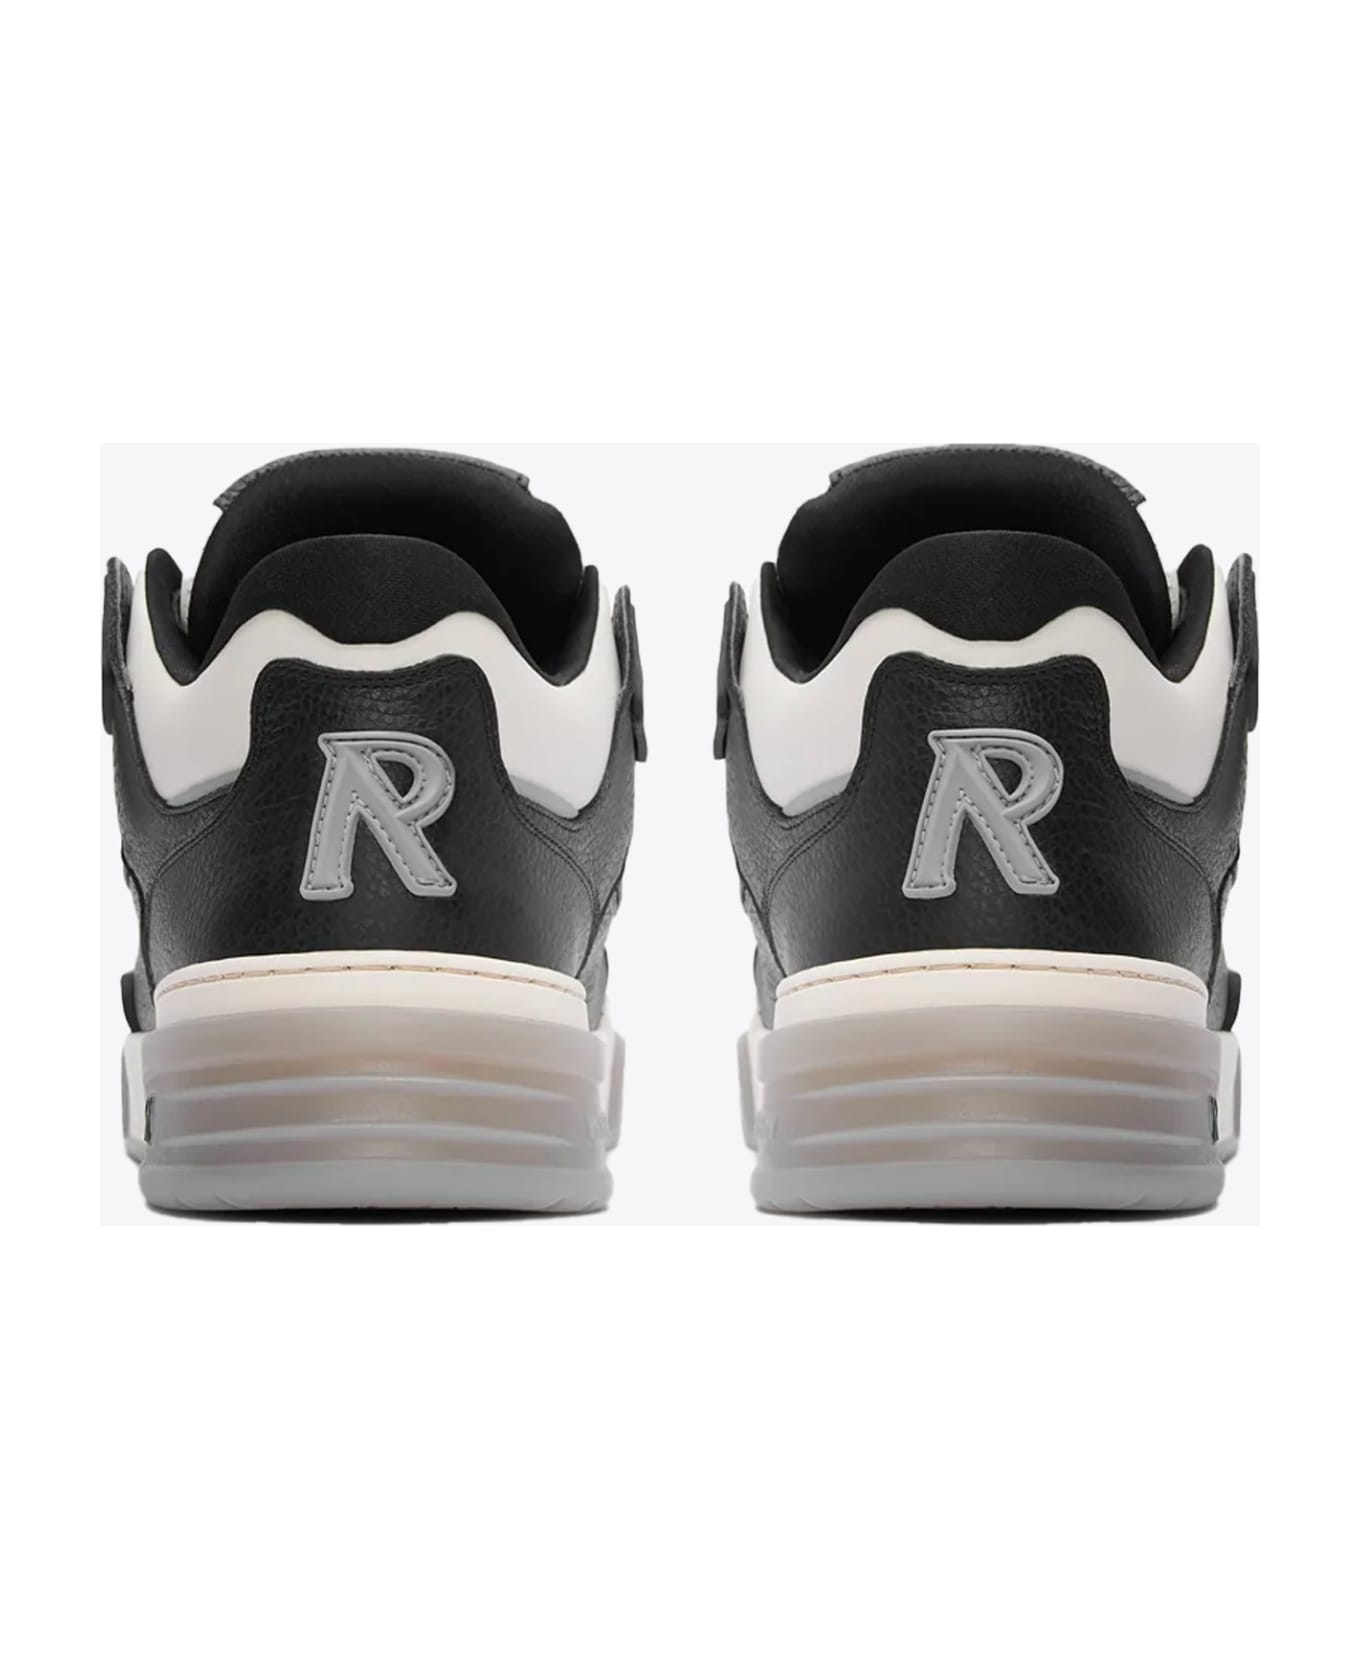 REPRESENT Studio Sneaker Off white and black leather low chunky sneaker - Studio sneaker - Nero/bianco